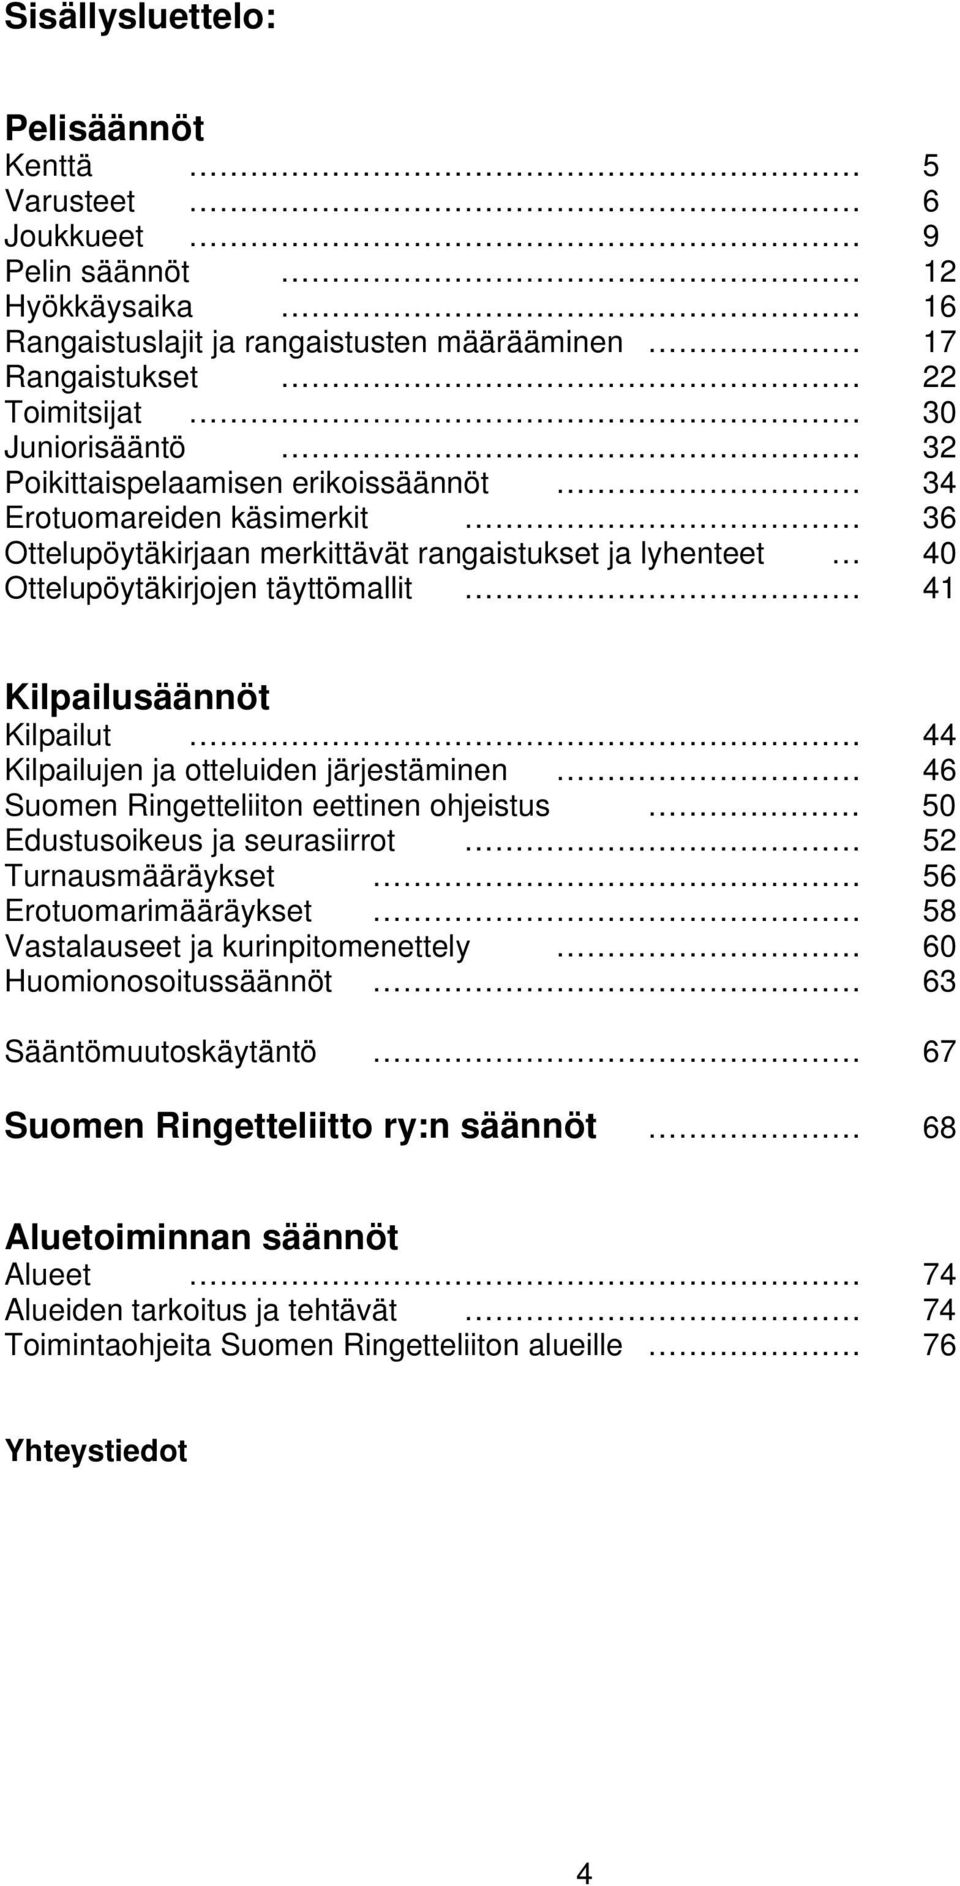 Kilpailujen ja otteluiden järjestäminen 46 Suomen Ringetteliiton eettinen ohjeistus 50 Edustusoikeus ja seurasiirrot 52 Turnausmääräykset 56 Erotuomarimääräykset 58 Vastalauseet ja kurinpitomenettely